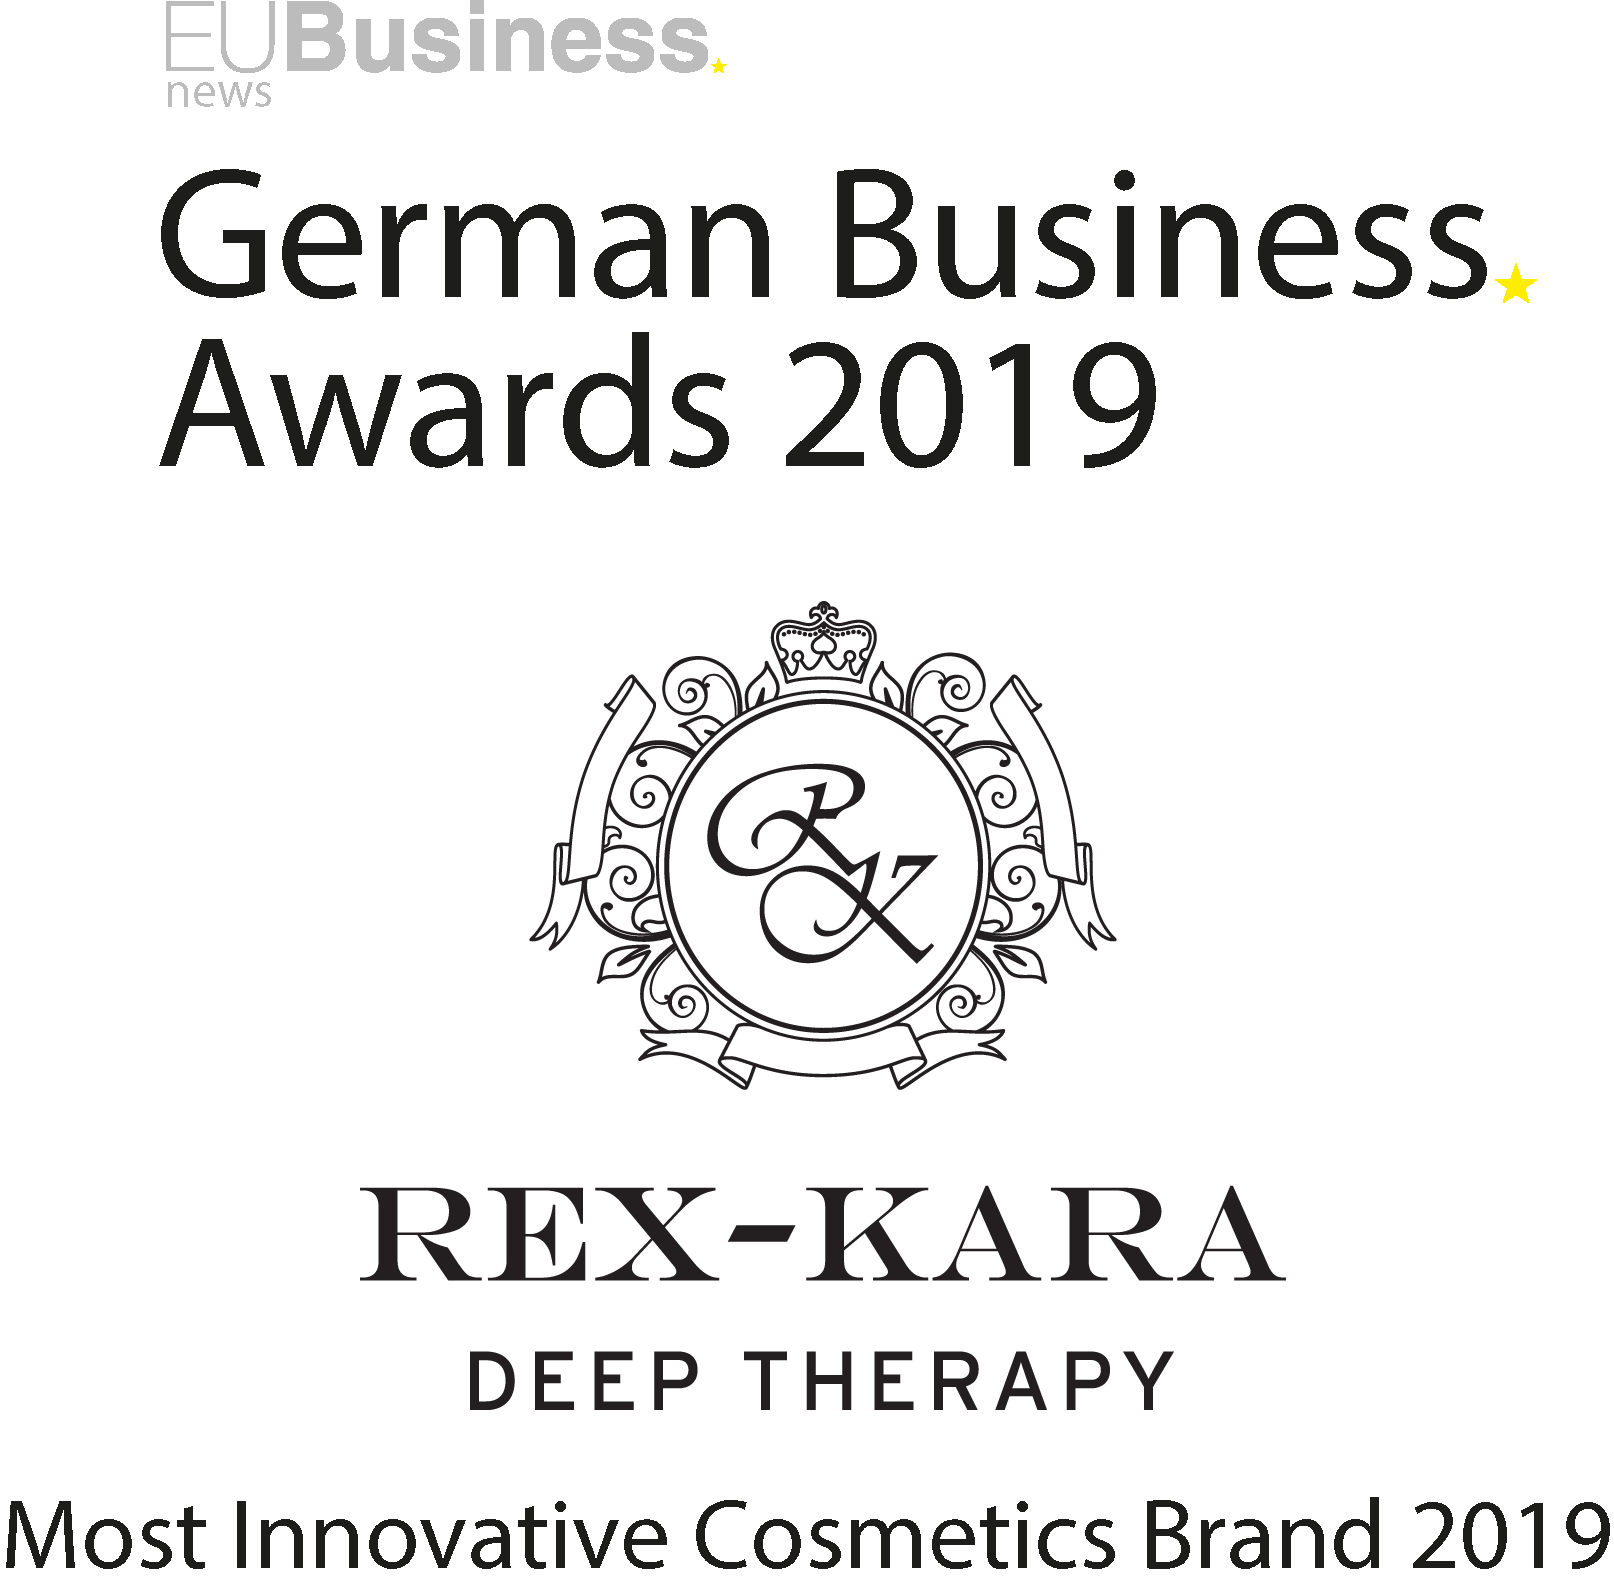 Ups hier sollte der Rex-Kara German Award 2019 stehen